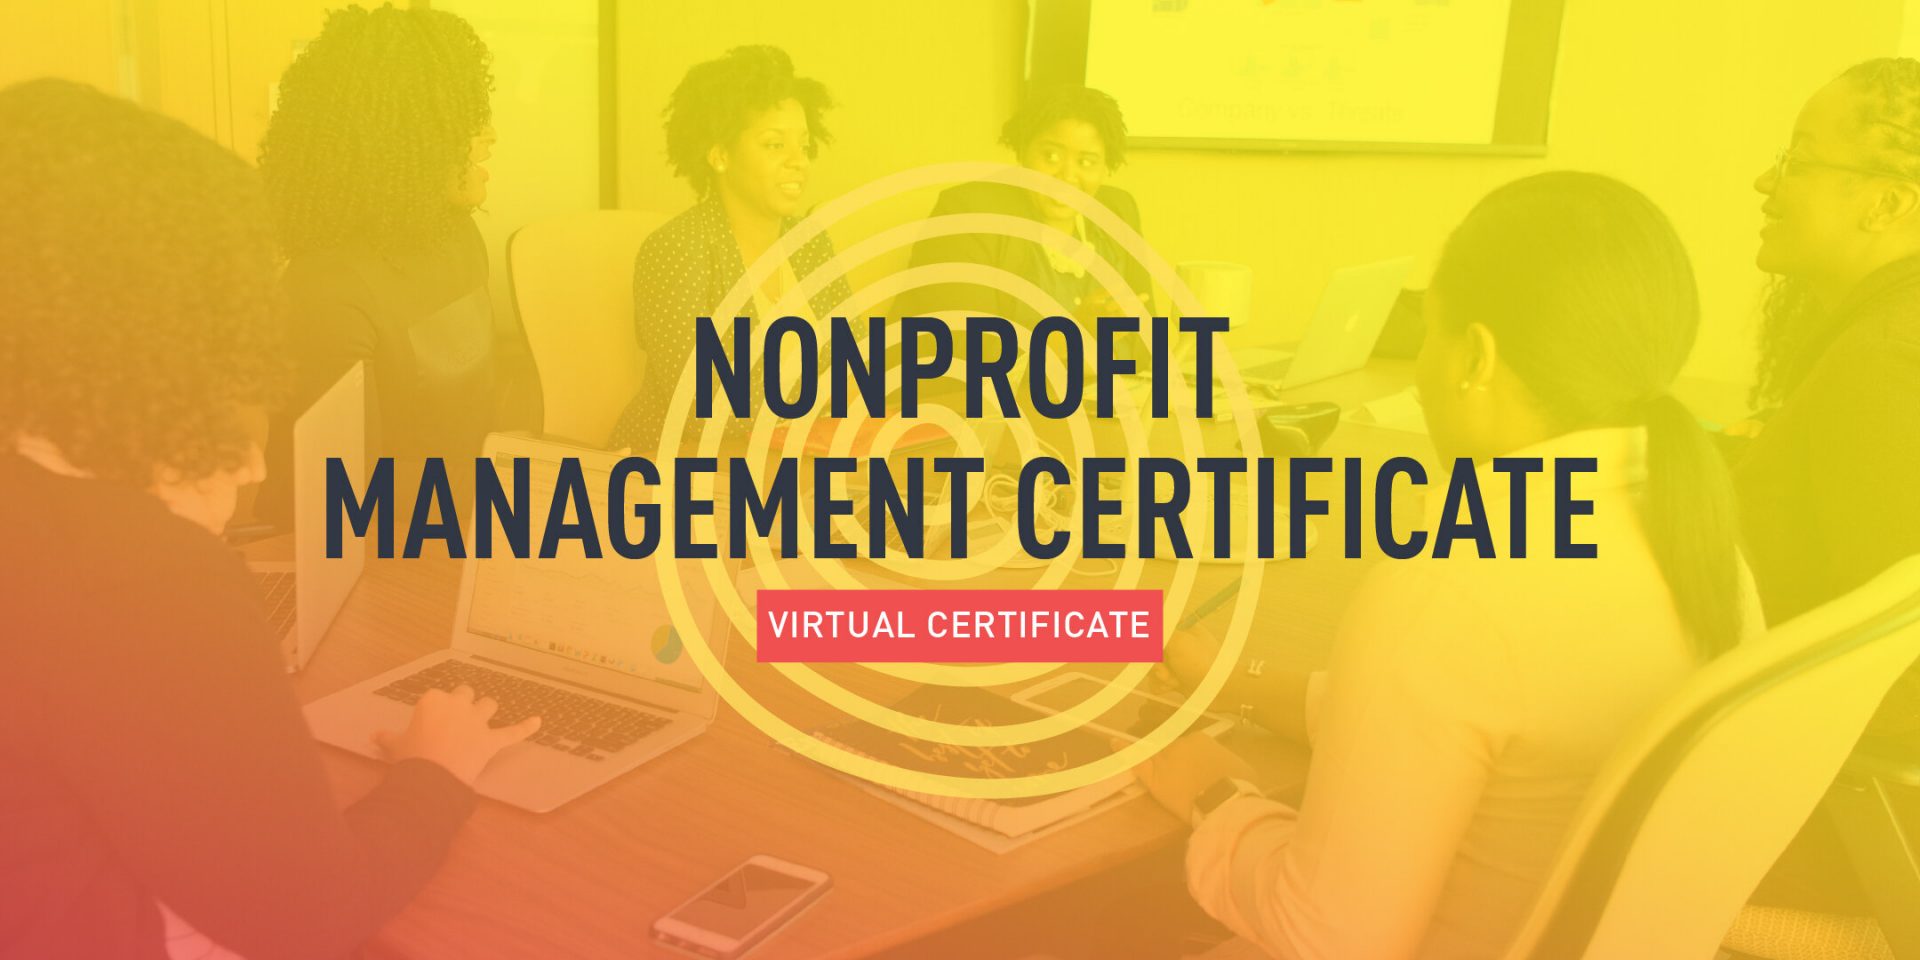 Nonprofit Management Certificate Center For Nonprofit Management